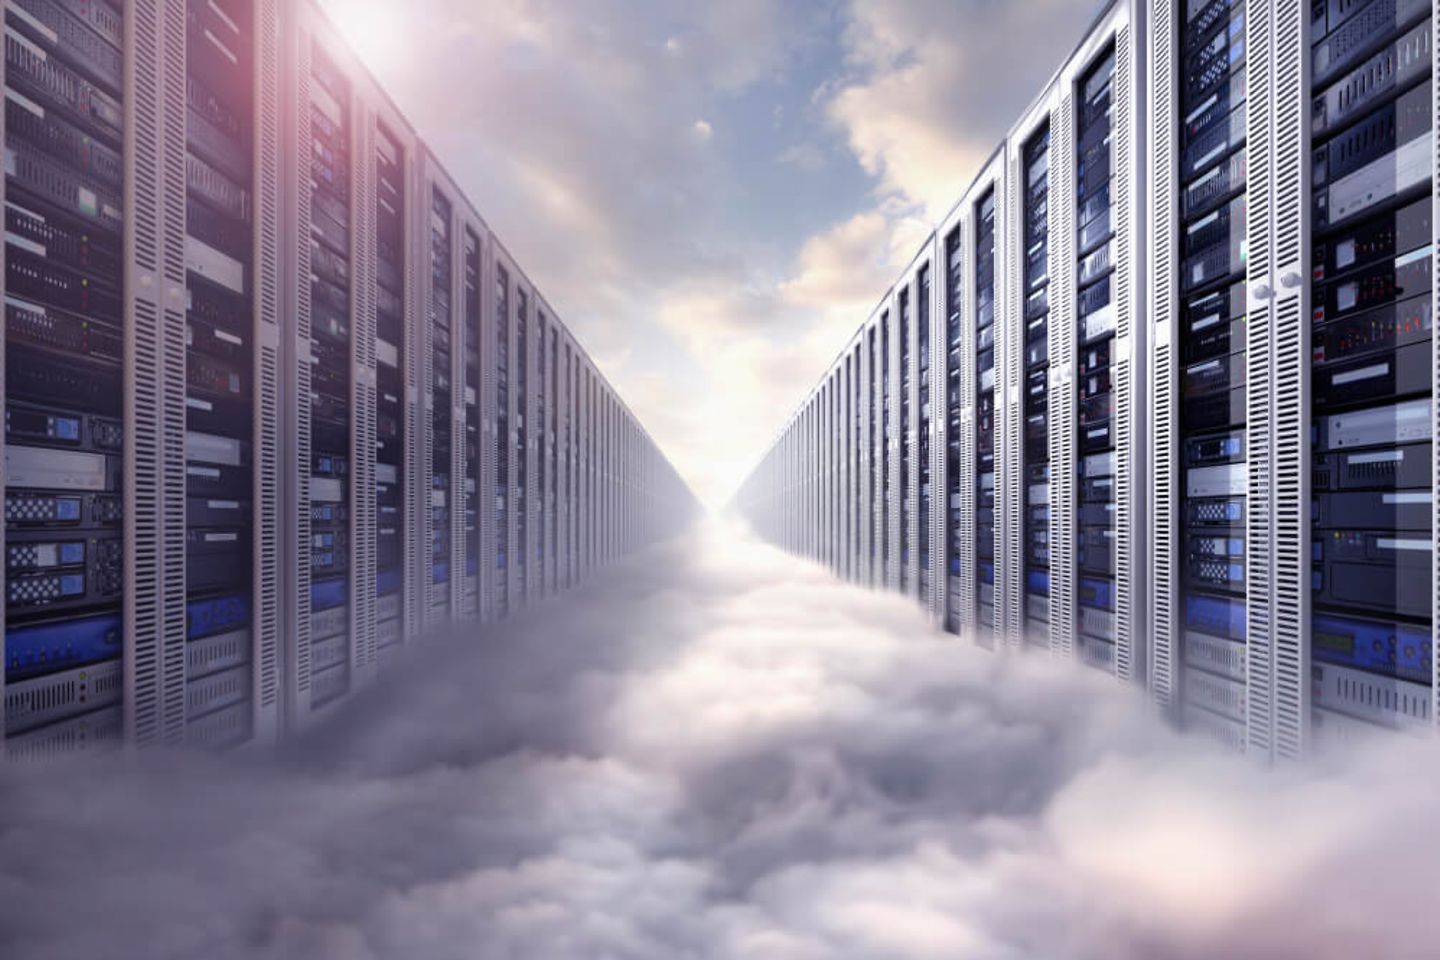 Composición de imágenes de servidores informáticos y nubes